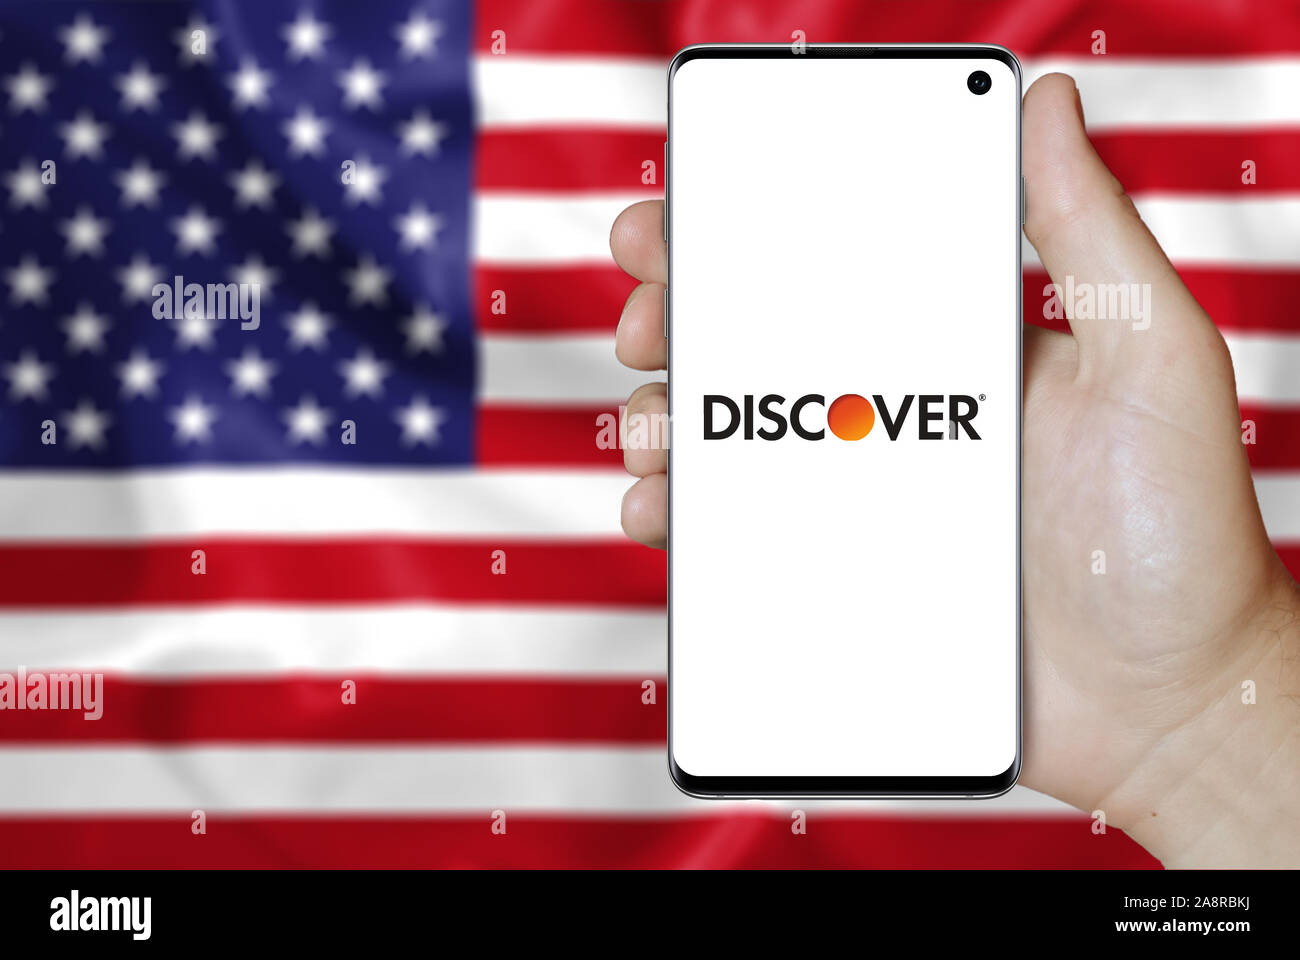 Logo der öffentlichen Unternehmen Discover Financial Services angezeigt auf einem Smartphone. Flagge der USA Hintergrund. Credit: PIXDUCE Stockfoto